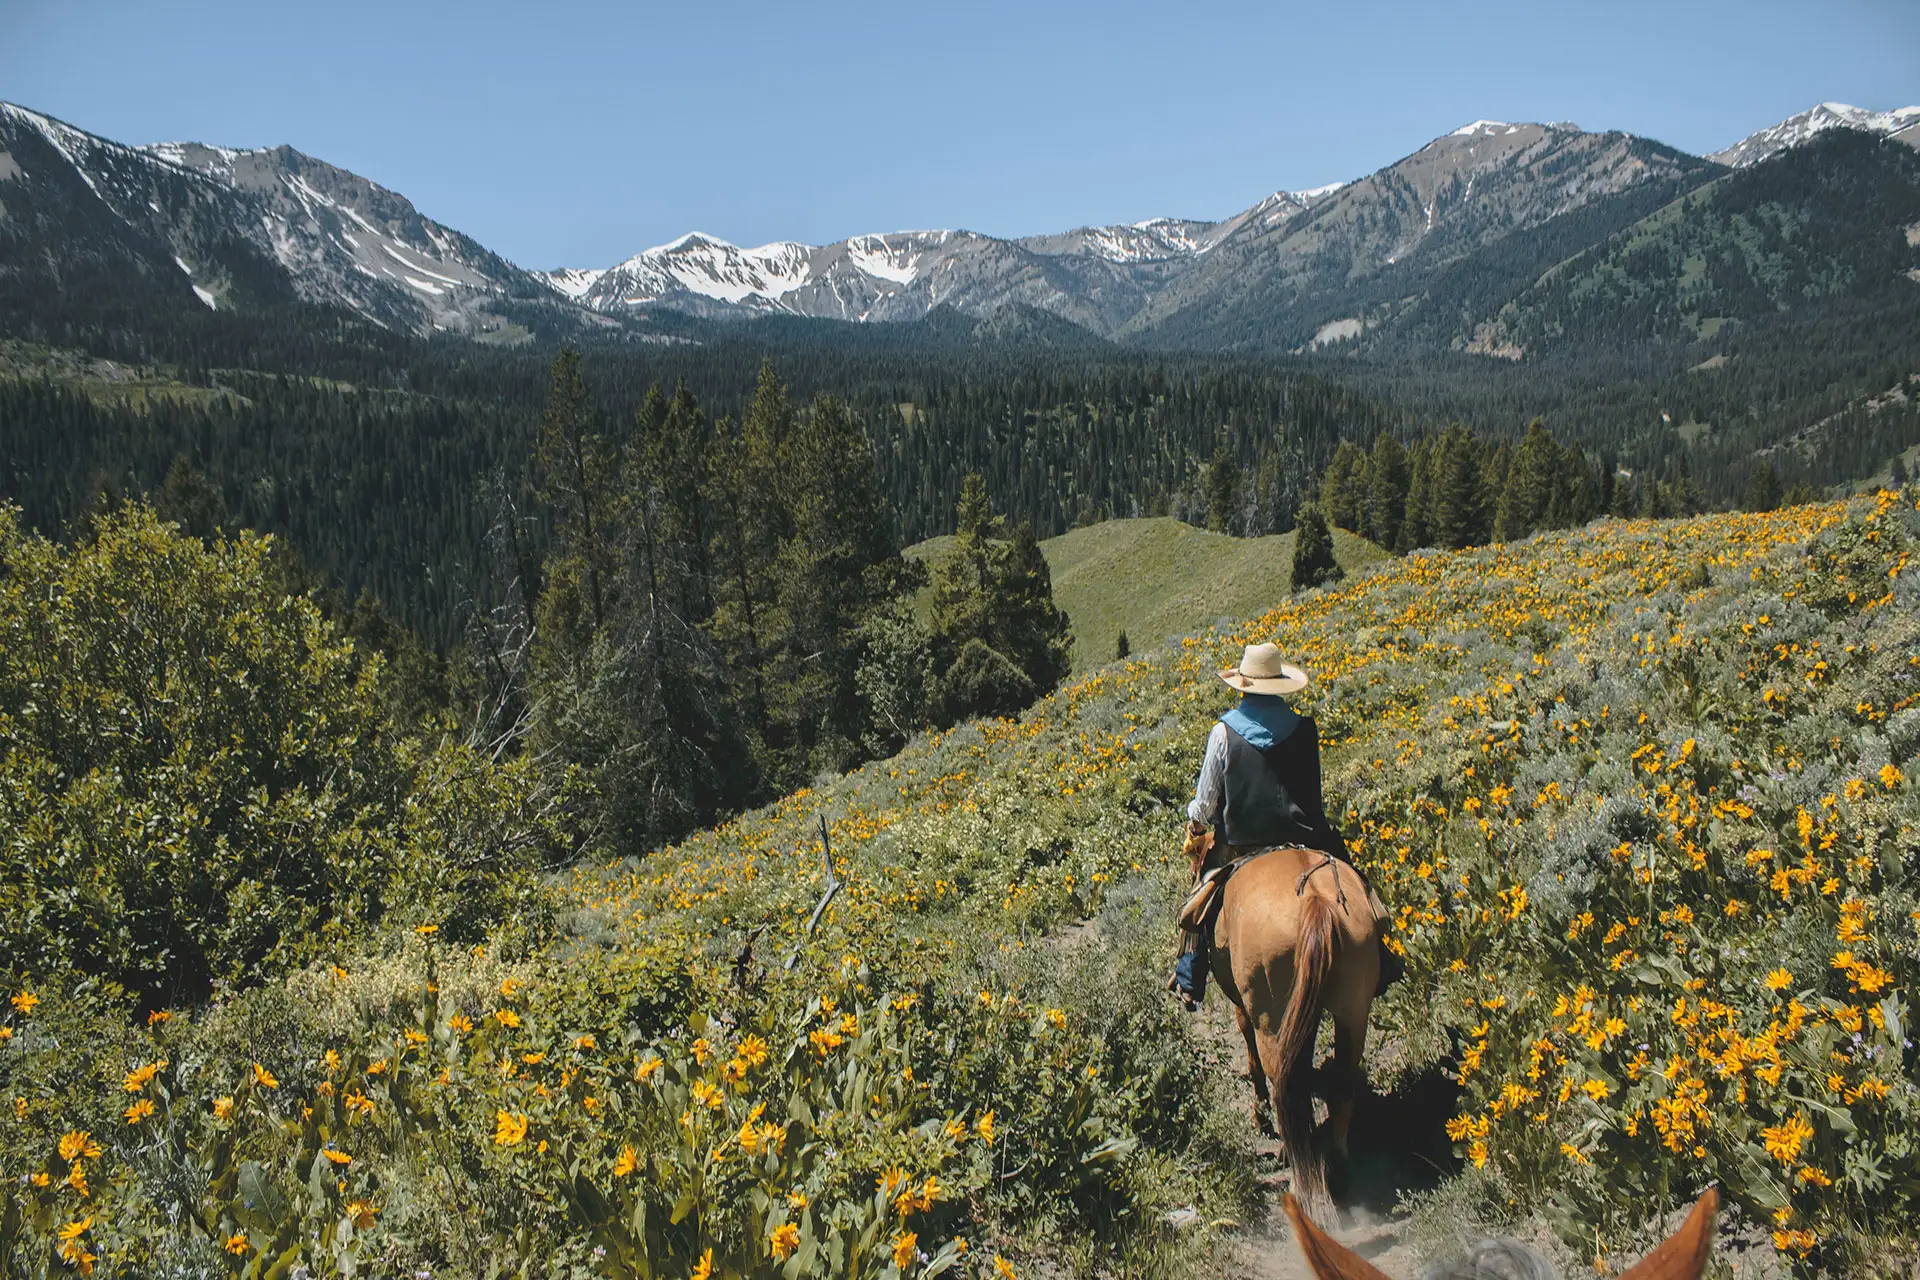 Horseback Riding in Grand Teton National Park; Courtesy of William Shafer/Shutterstock.com